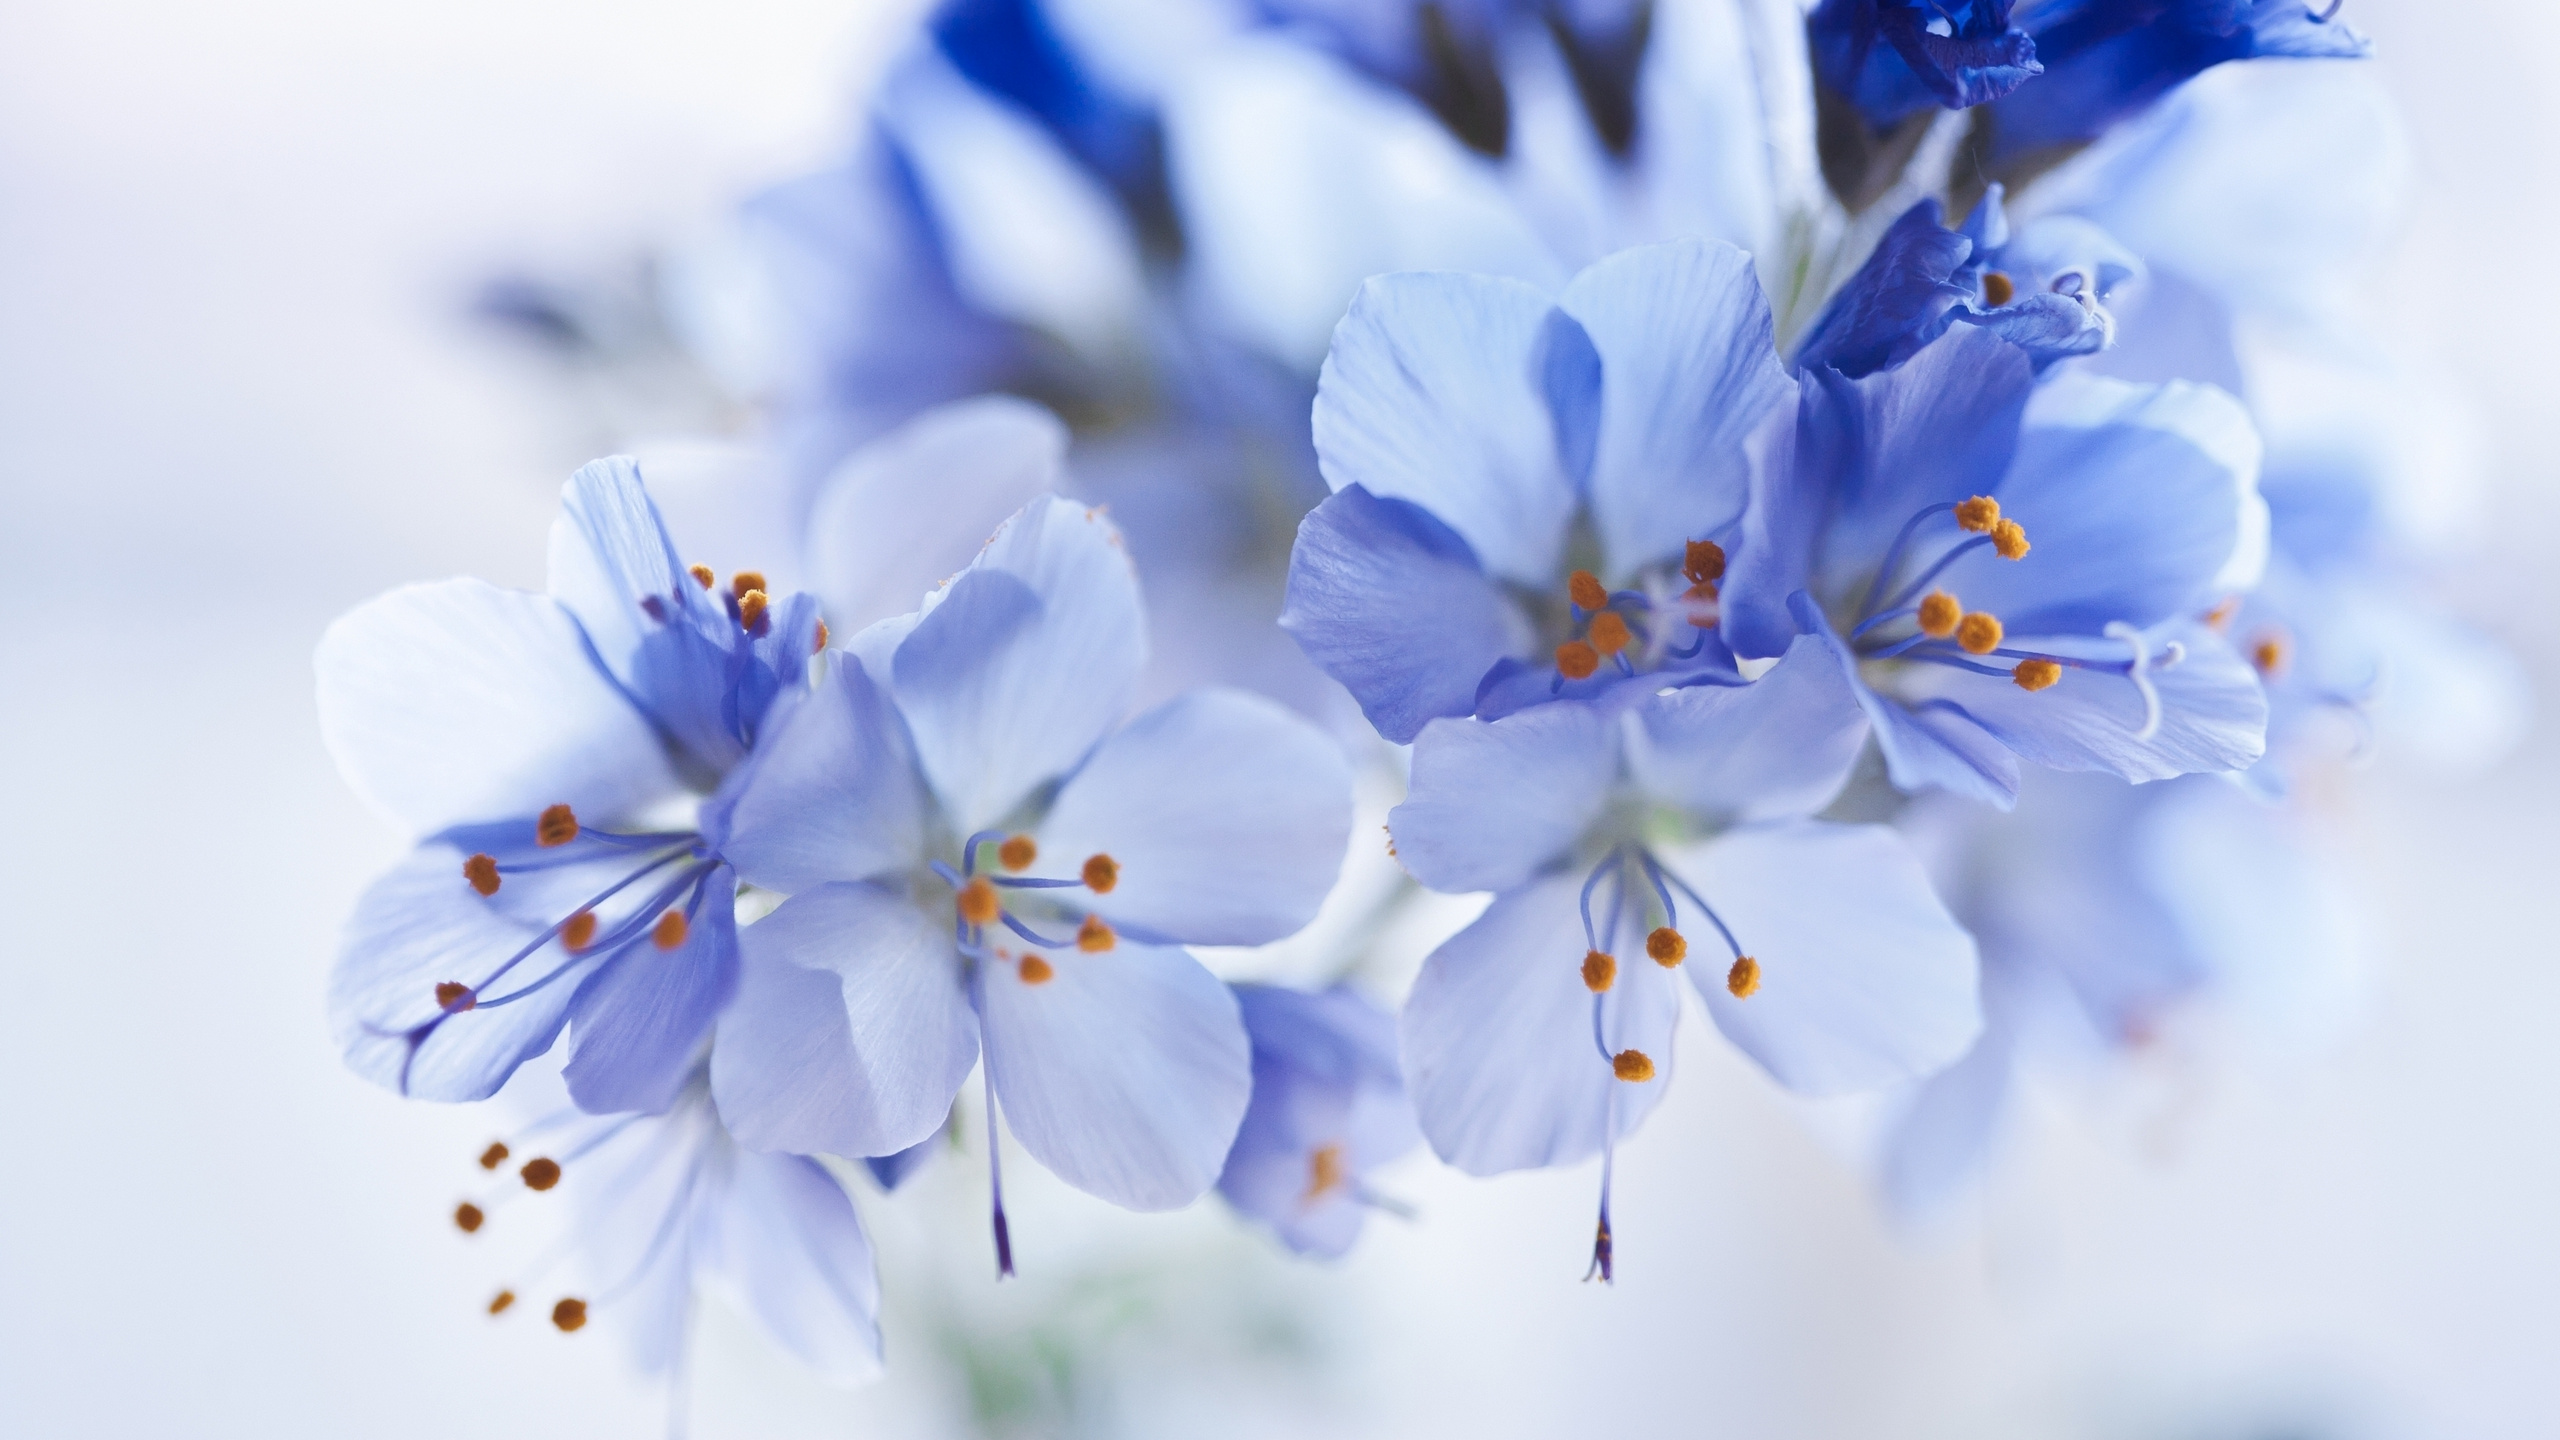 White and Blue Flowers in Tilt Shift Lens. Wallpaper in 2560x1440 Resolution